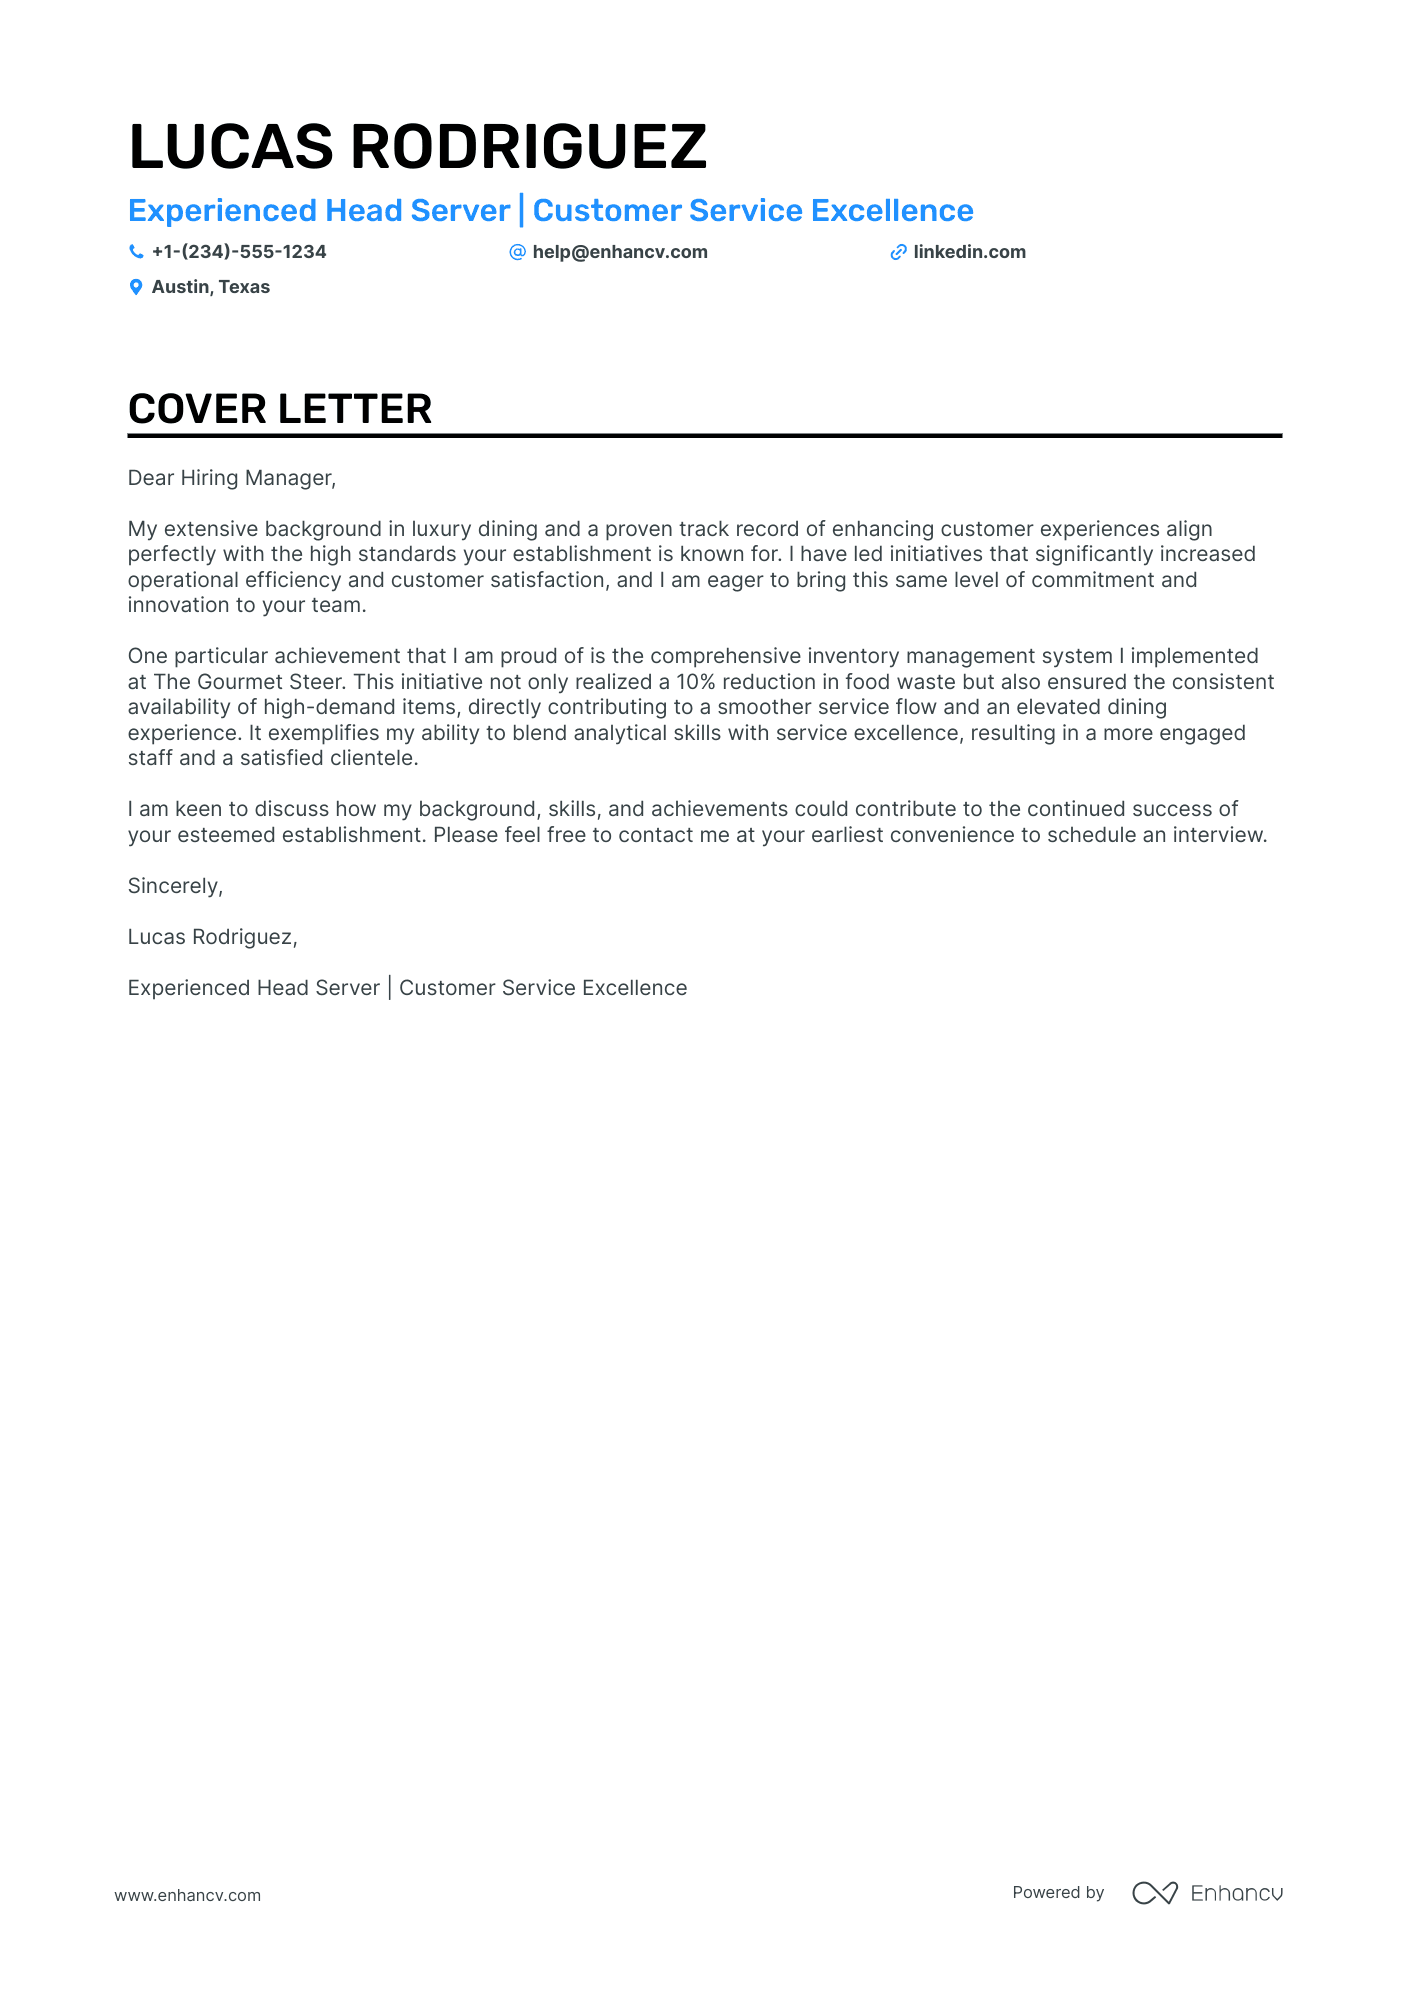 Head Server cover letter